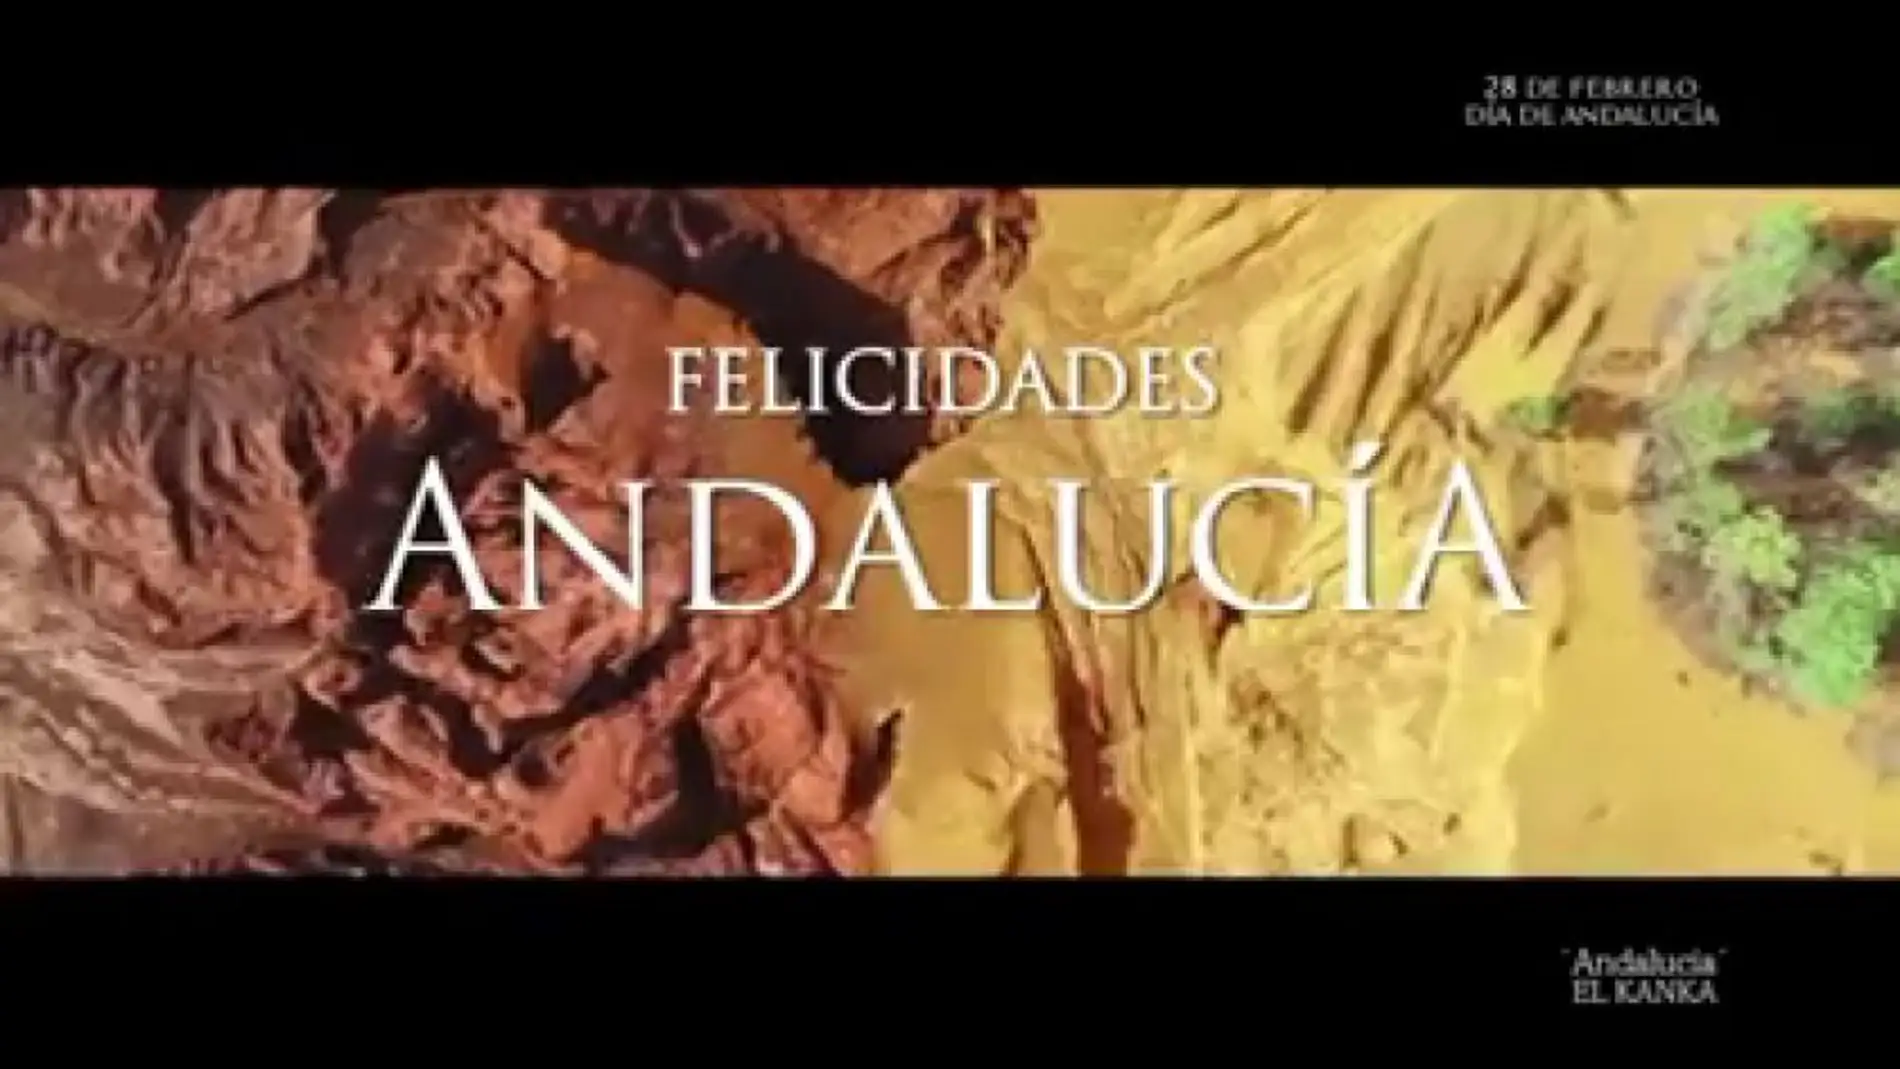 Andalucía, protagonista en la campaña "La televisión de un gran país" de ATRESMEDIA